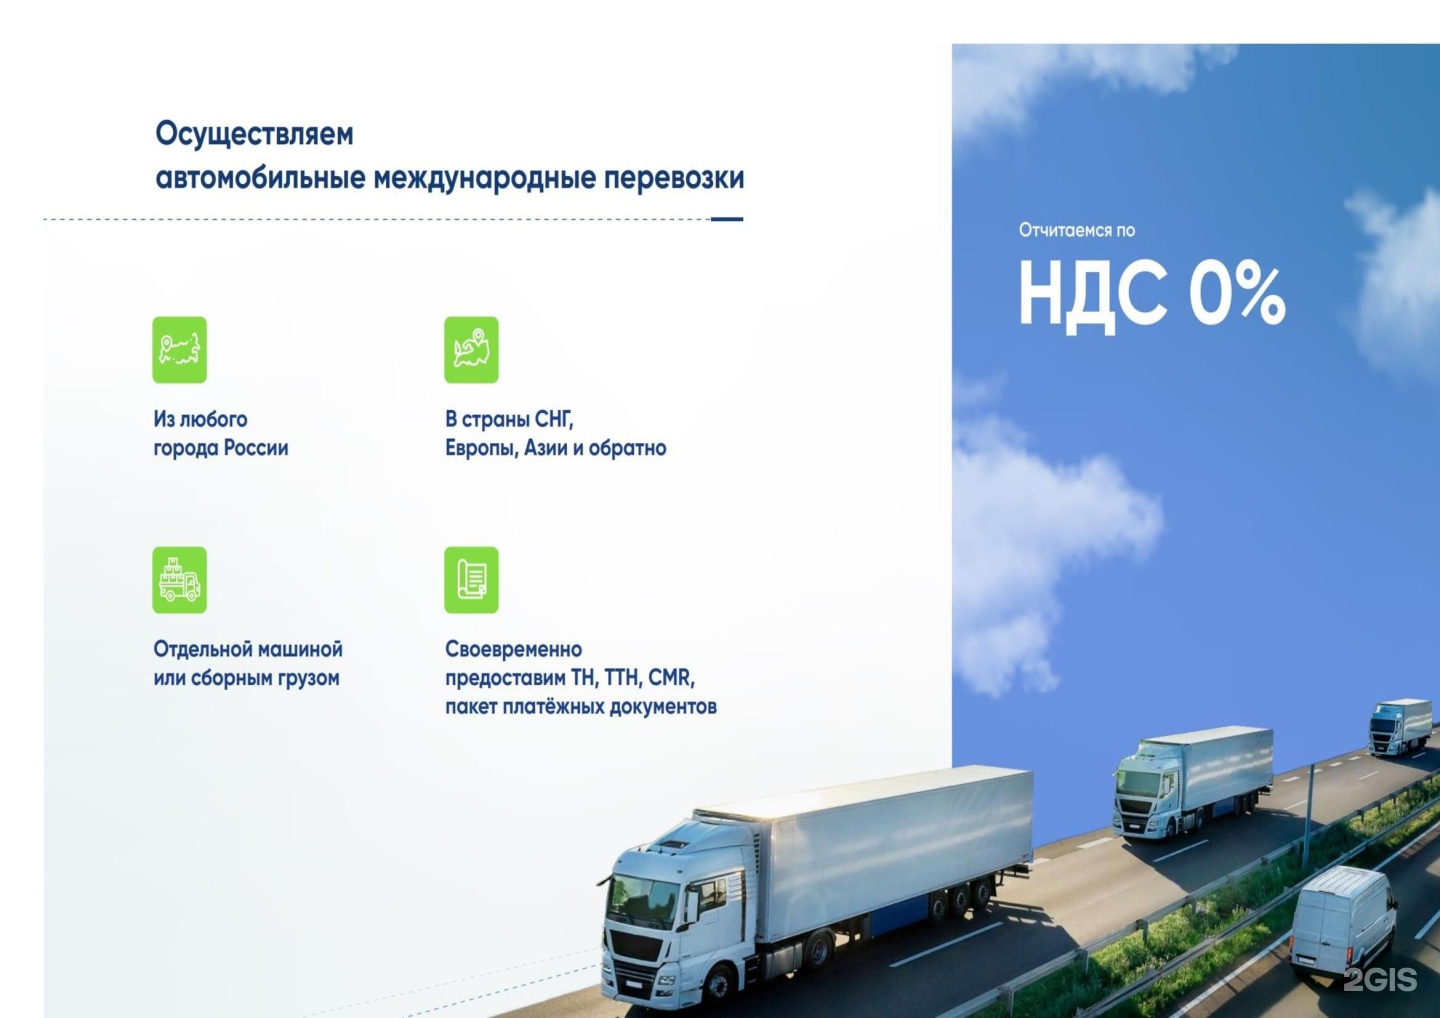 Транспортная компания Екатеринбург. Транспортный серви́с. Транспортные фирмы в ЕКБ. It сервис для транспортных компаний.